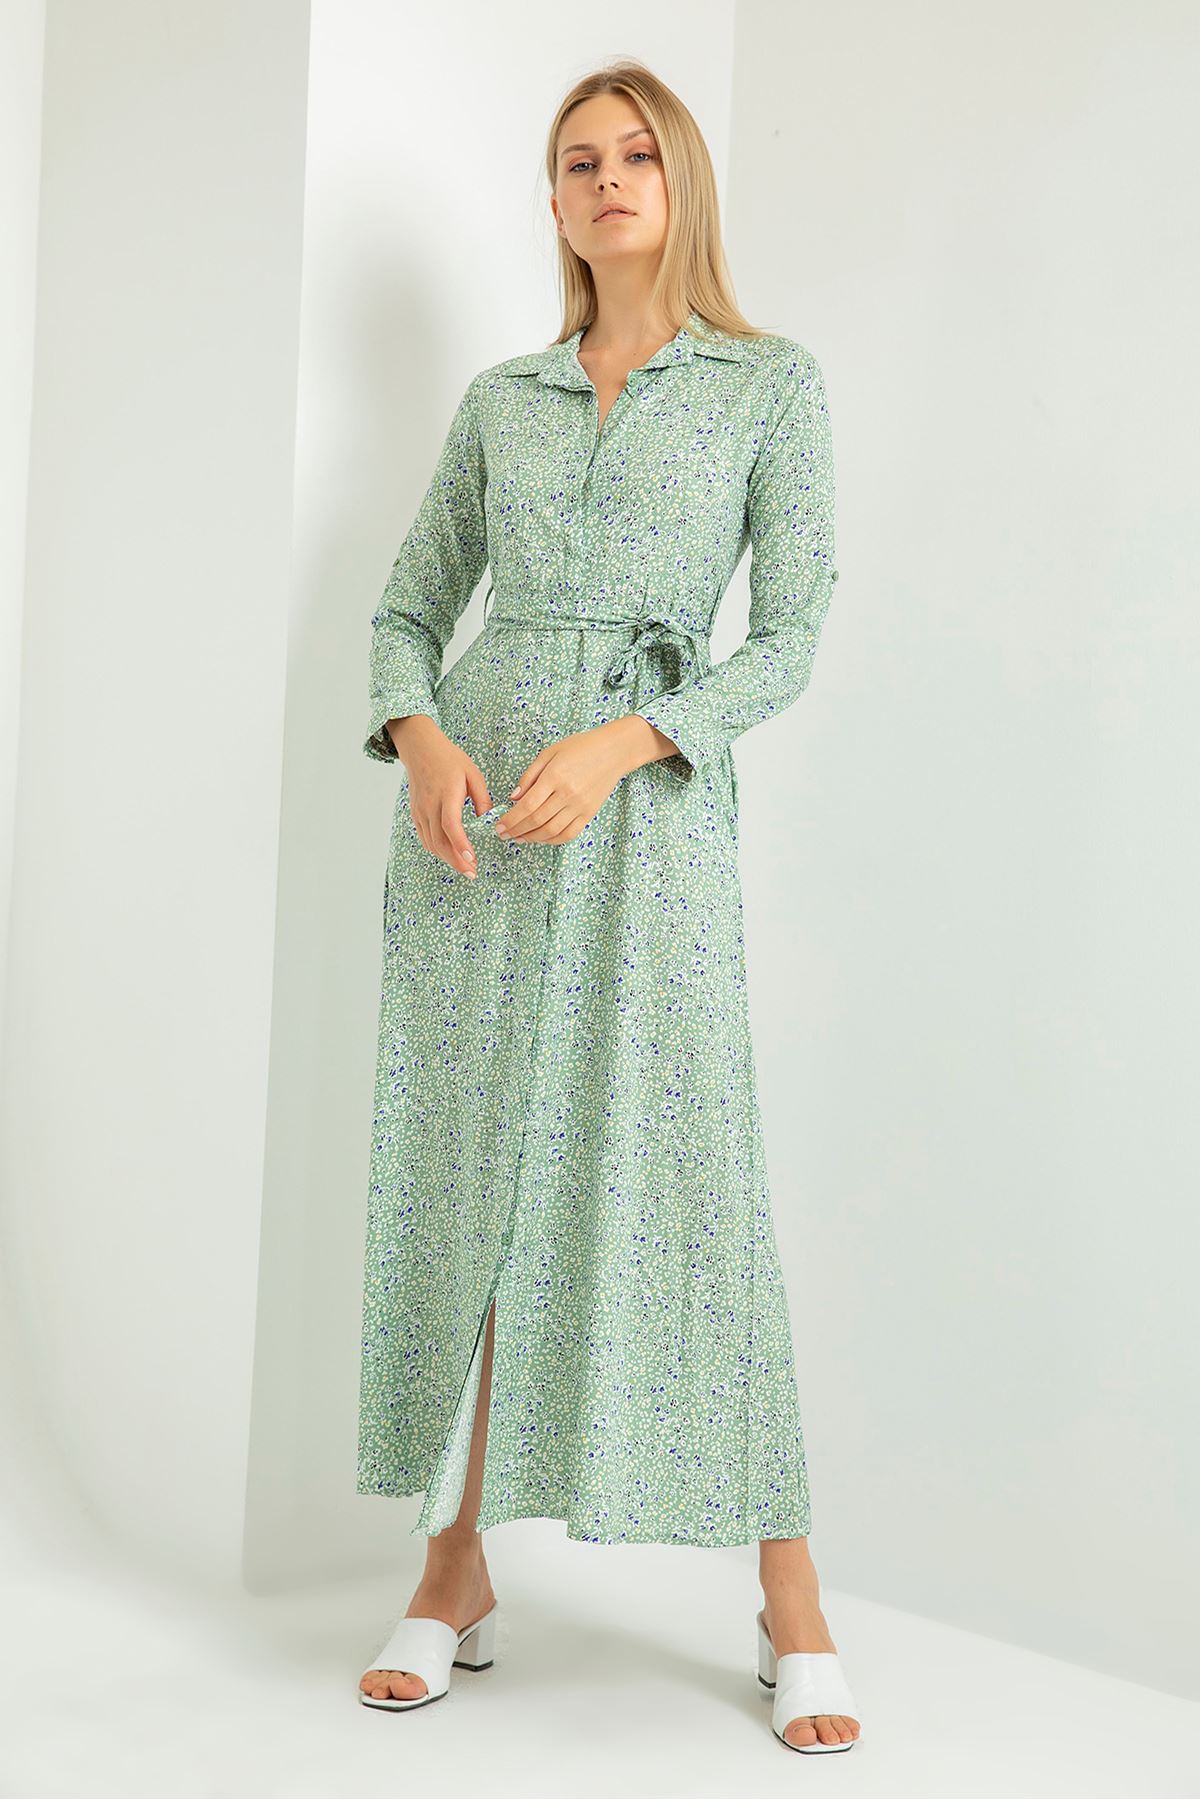 Empirme Kumaş Gömlek Yaka Çıtır Çiçek Desenli Kadın Elbise-Mint